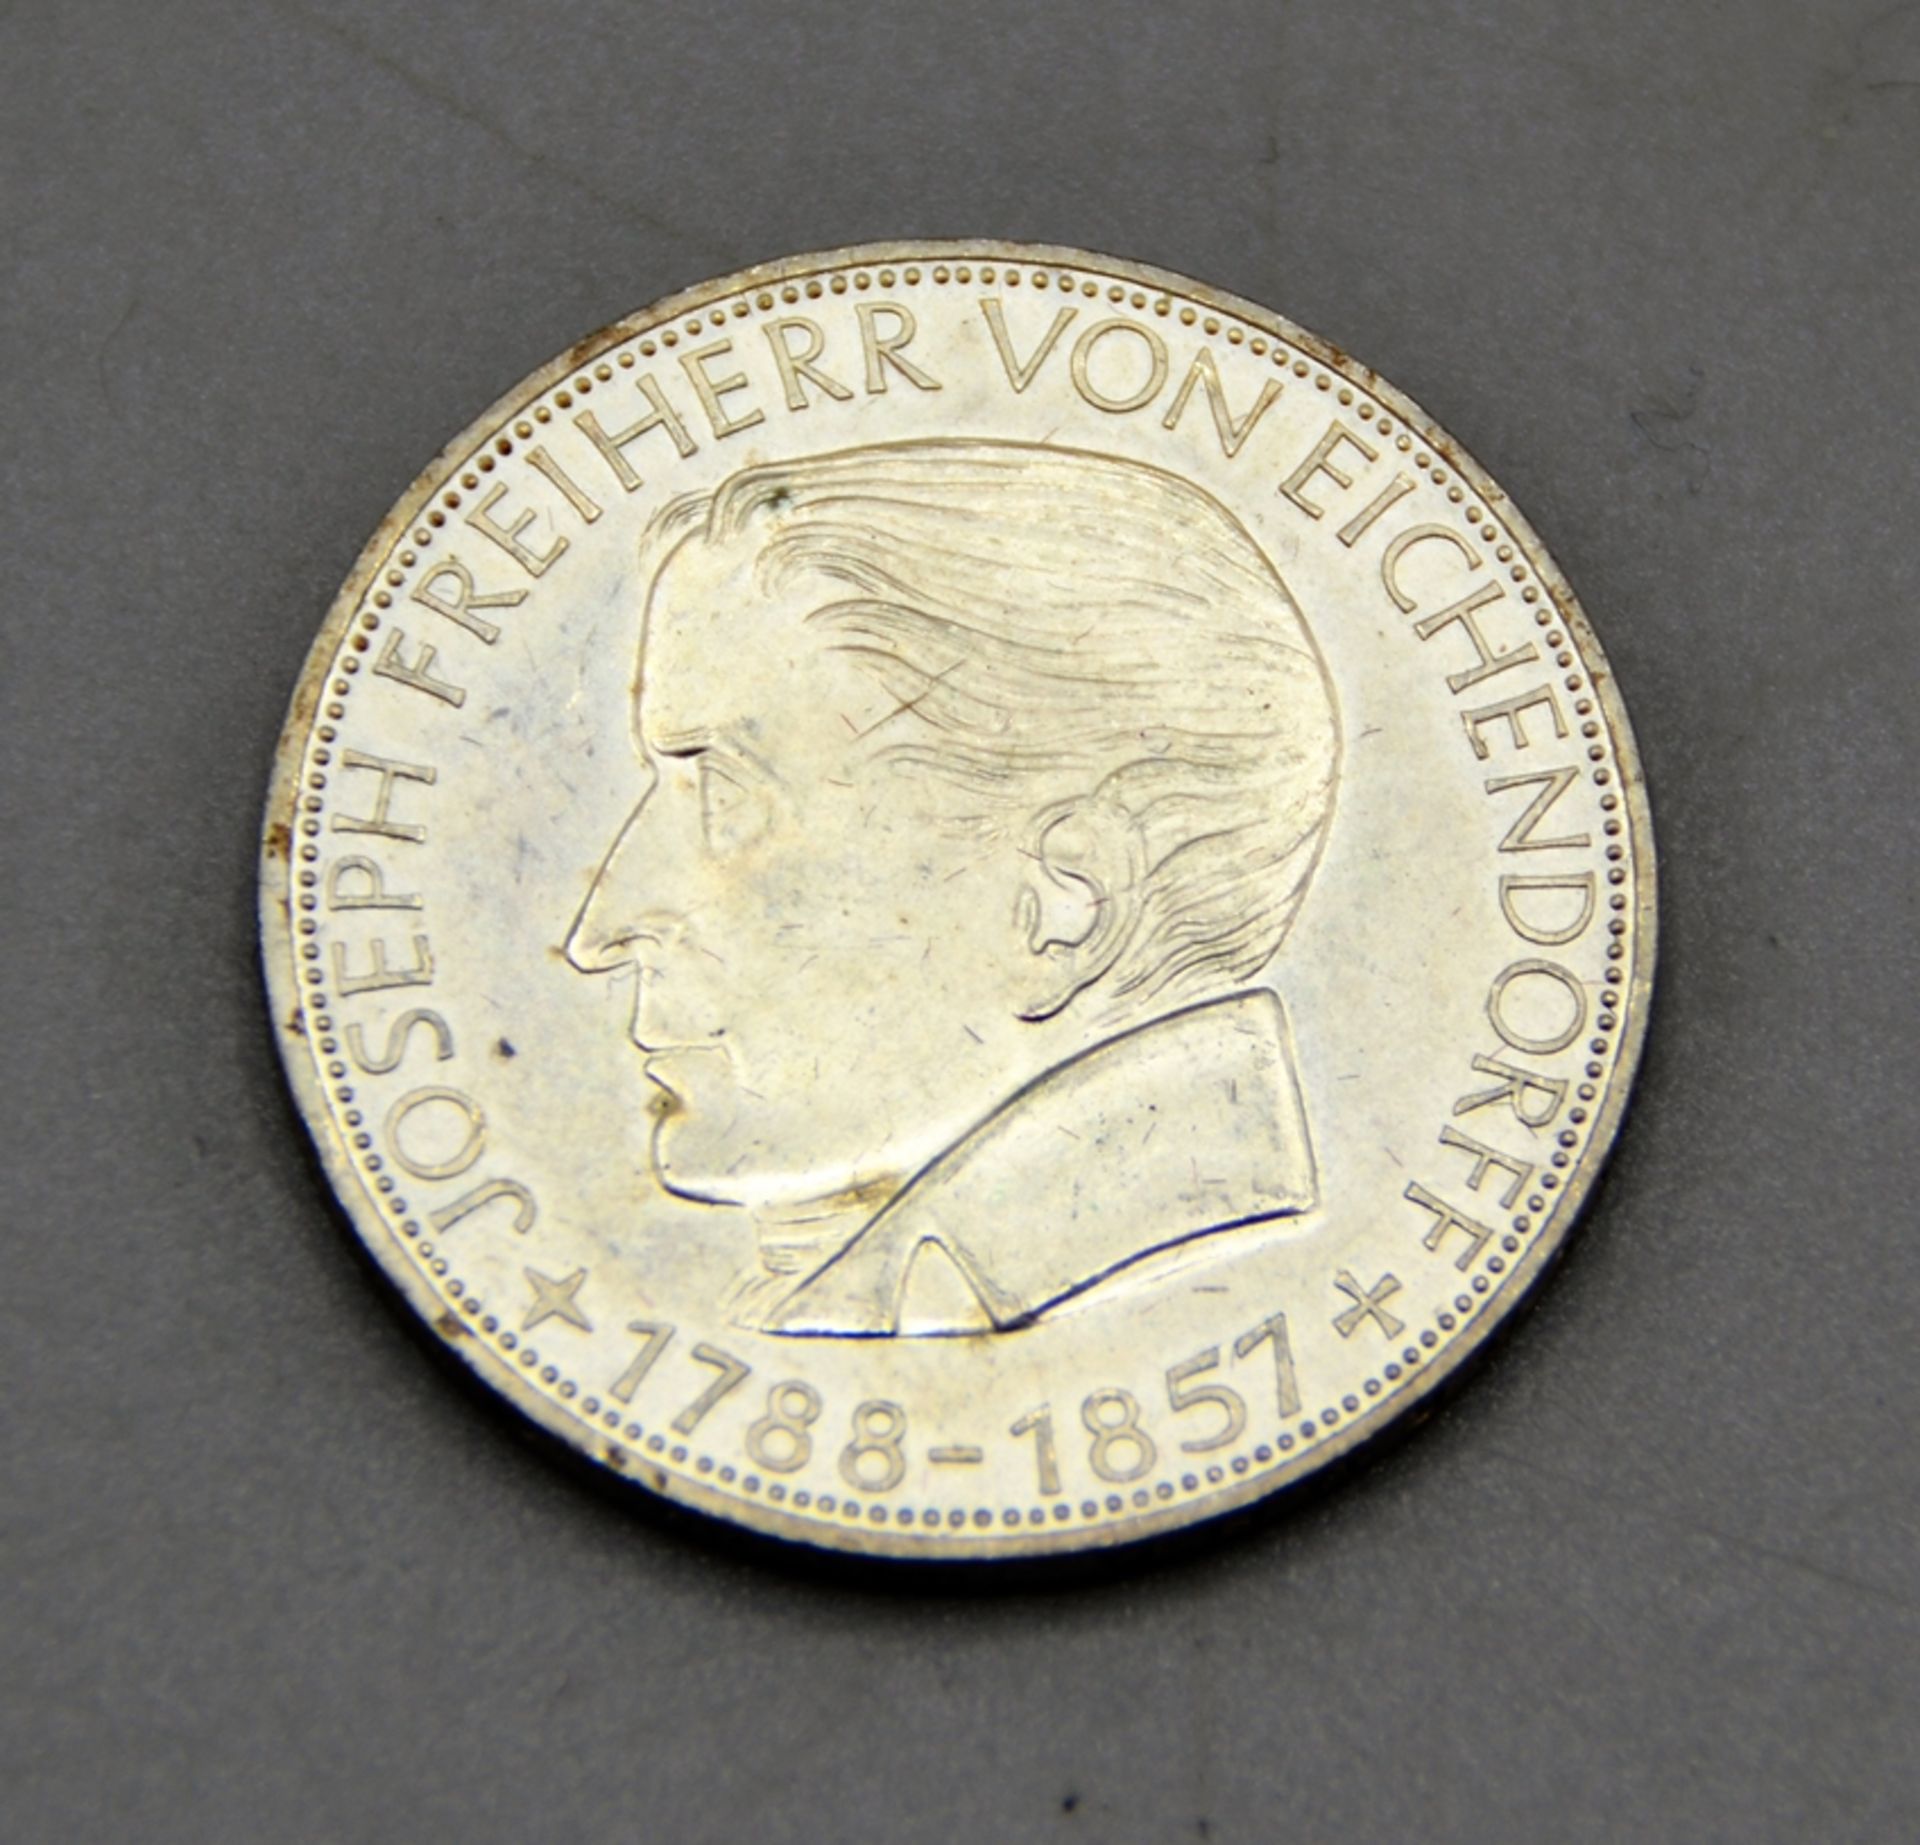 5 DM 1957 J Joseph Freiherr von Eichendorff Gedenkmünze Silber, minimaler Randfehler (kaum sichtbar